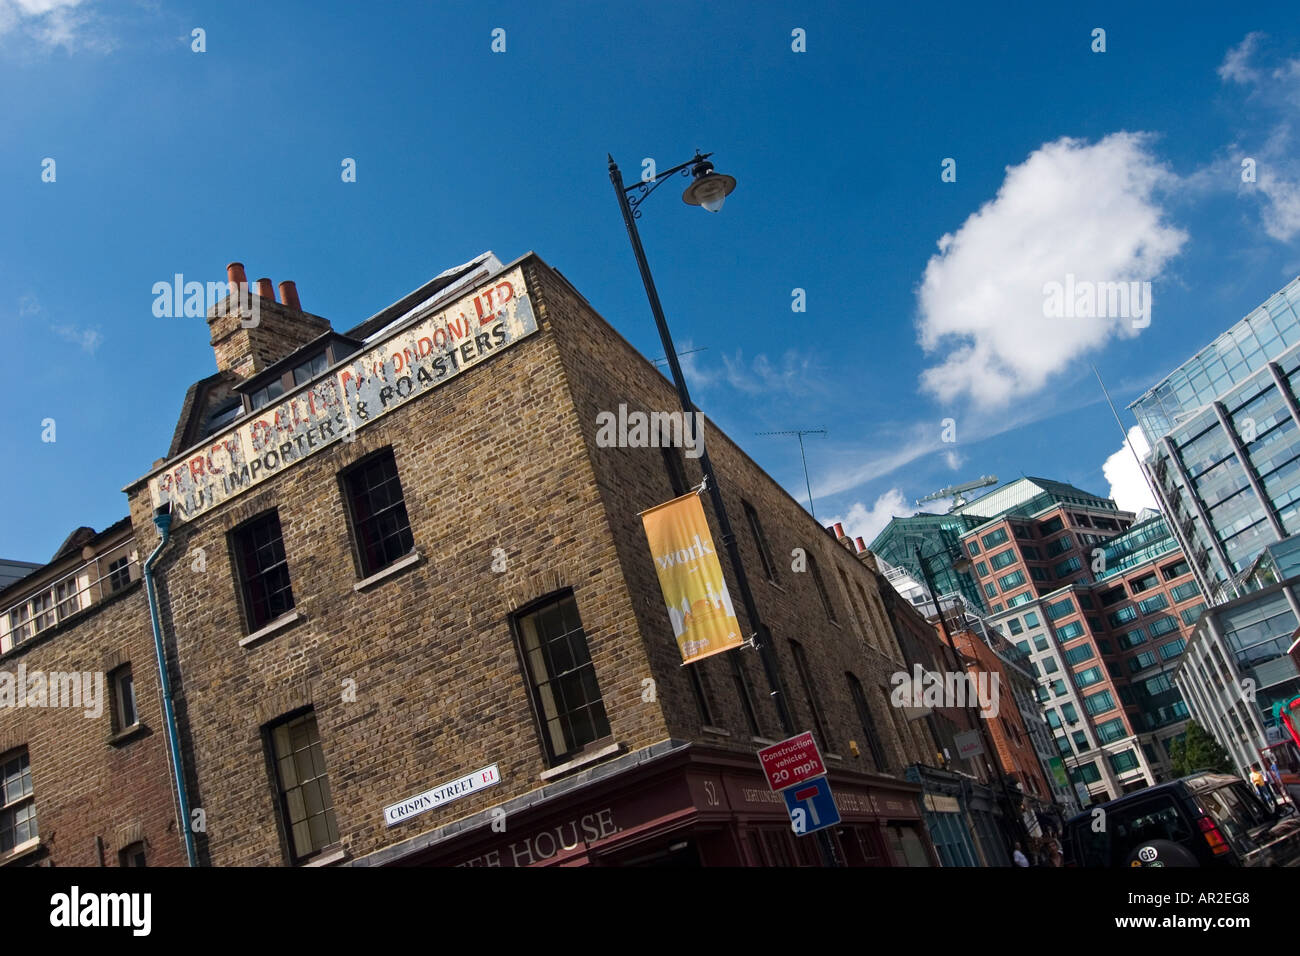 Vieux répond à de nouvelles Brushfield Street London Old East London en toile de façade contre l'architecture moderne Banque D'Images